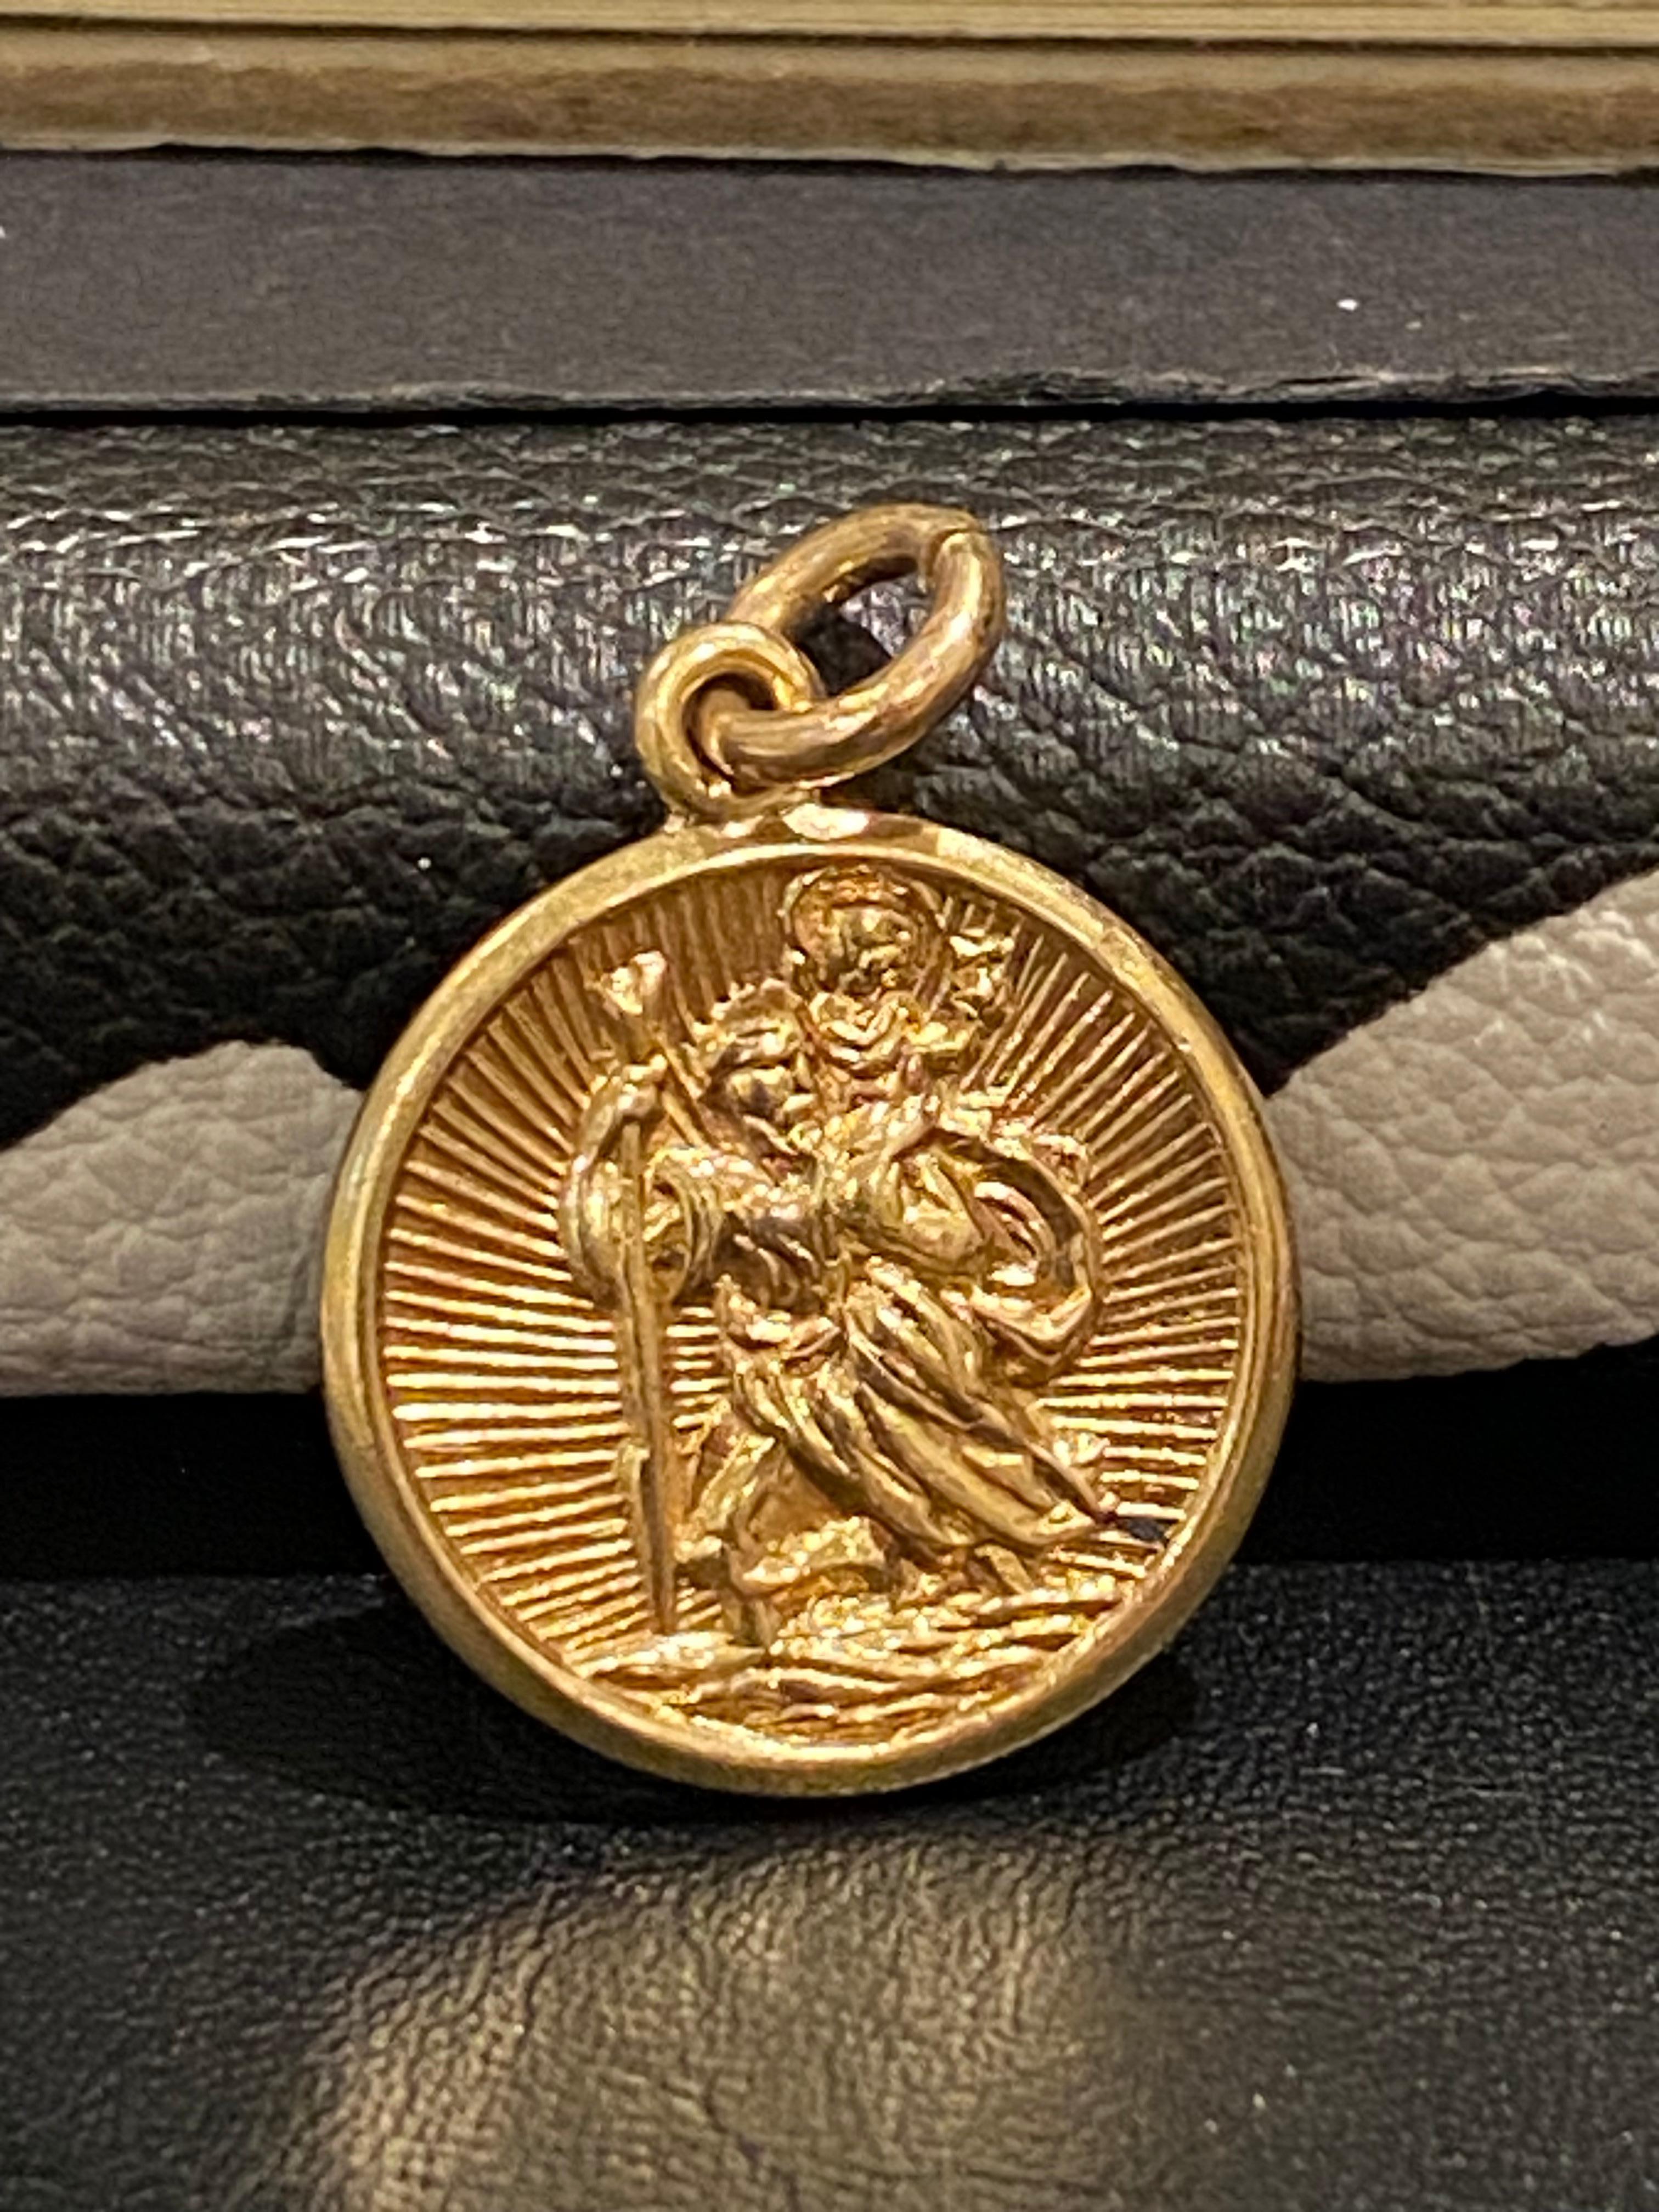 Aufwendig gestaltet wie eine Münze, 

dieser exquisite Charme ist fein geprägt

mit Abbildung des olympischen Poseidon - 

der über das Meer, Stürme, Erdbeben und Pferde wacht  

  

Ausgeführt in 9K Gelbgold & 

durchgehend sehr detailliert

 

Mit